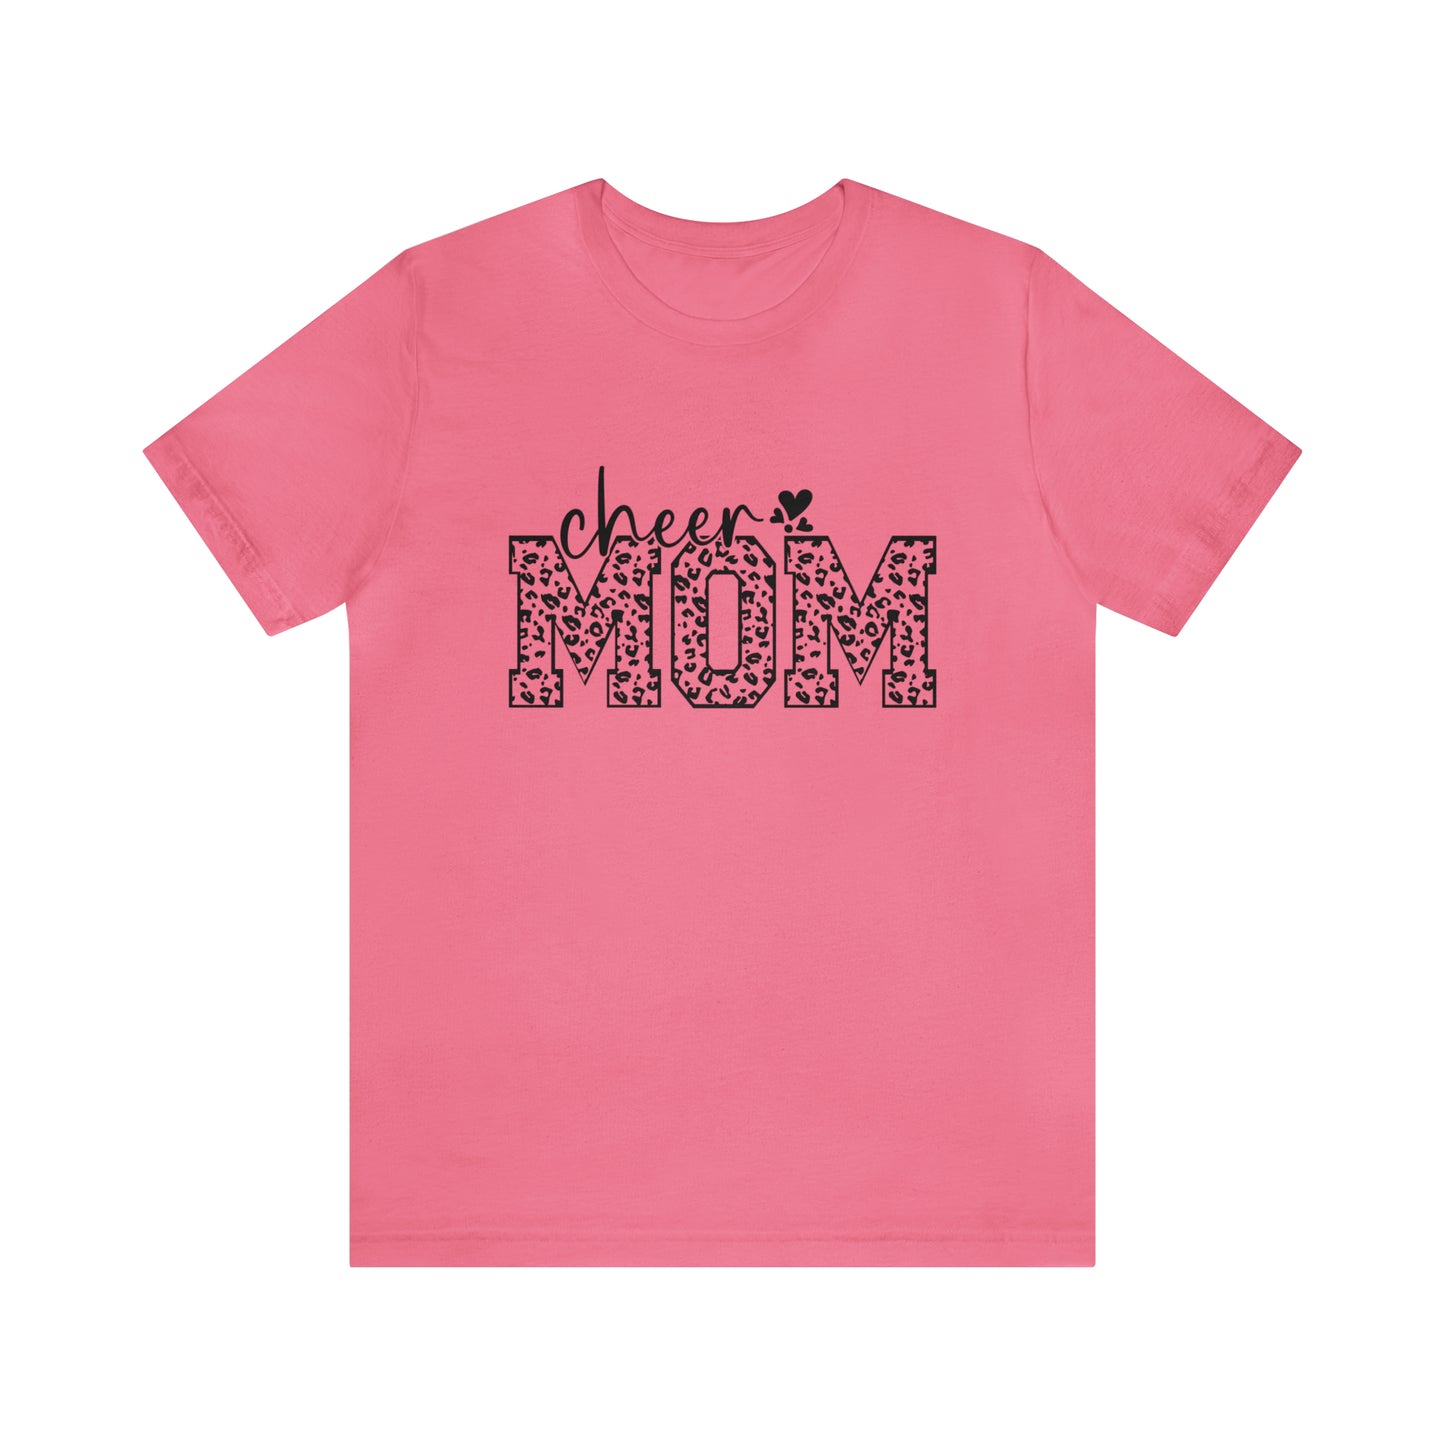 Cheer Mom Leopard - Jersey Short Sleeve T-Shirt